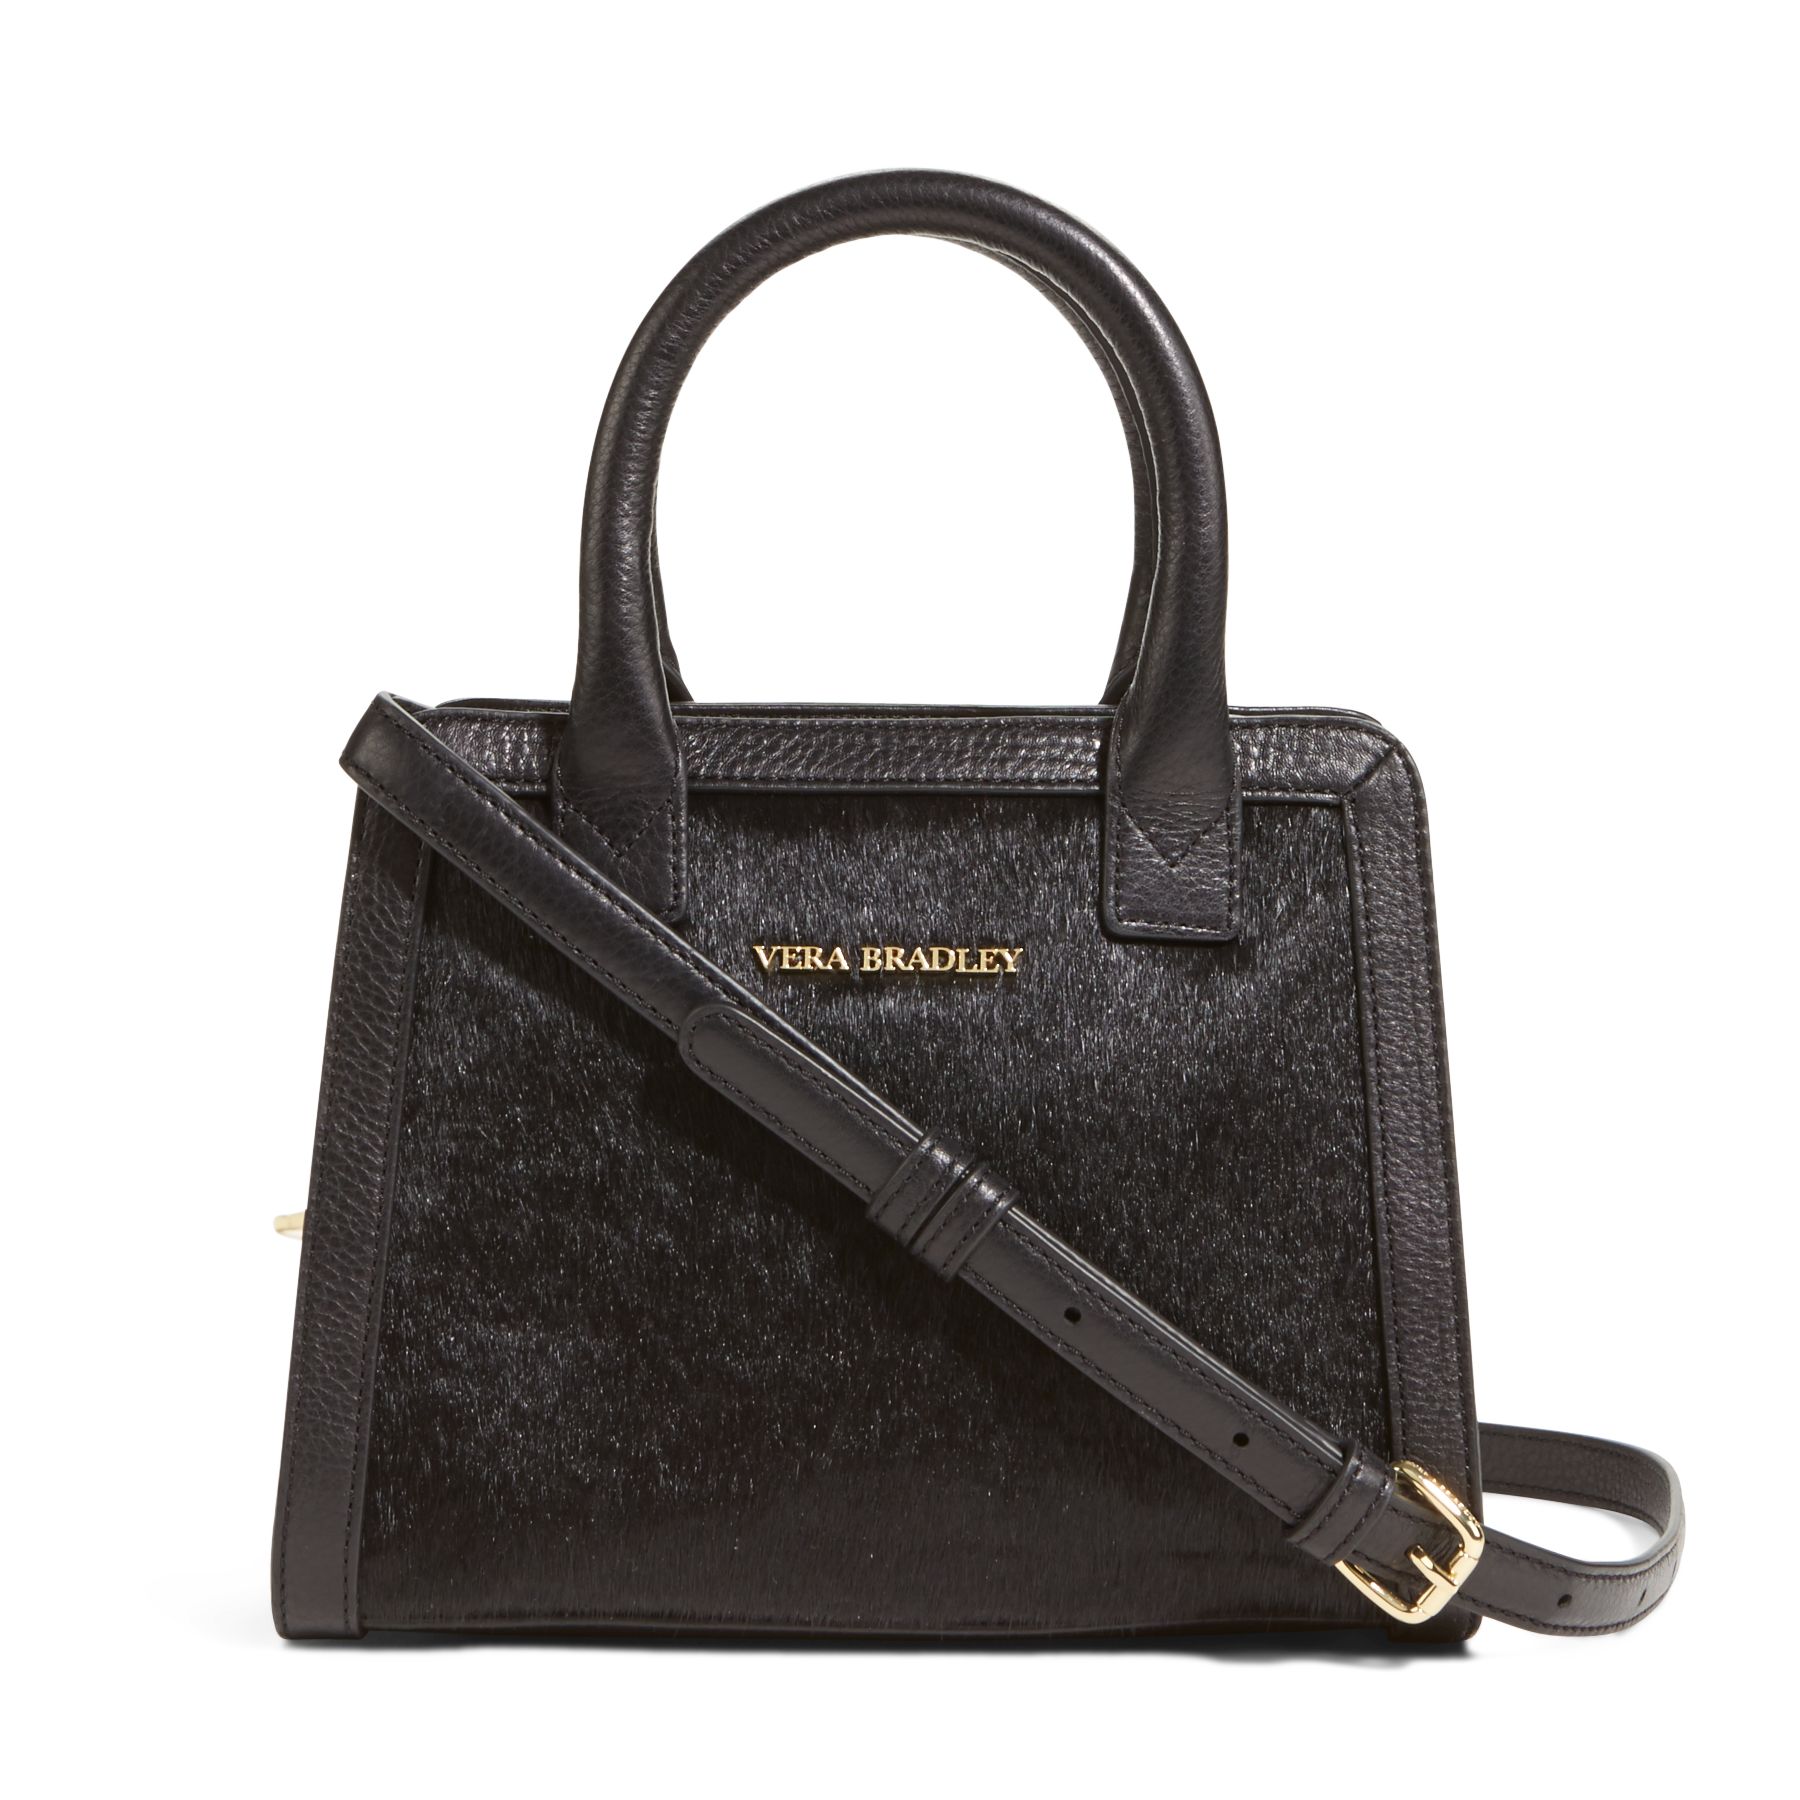 Vera Bradley Leather Natalie Crossbody Bag | eBay